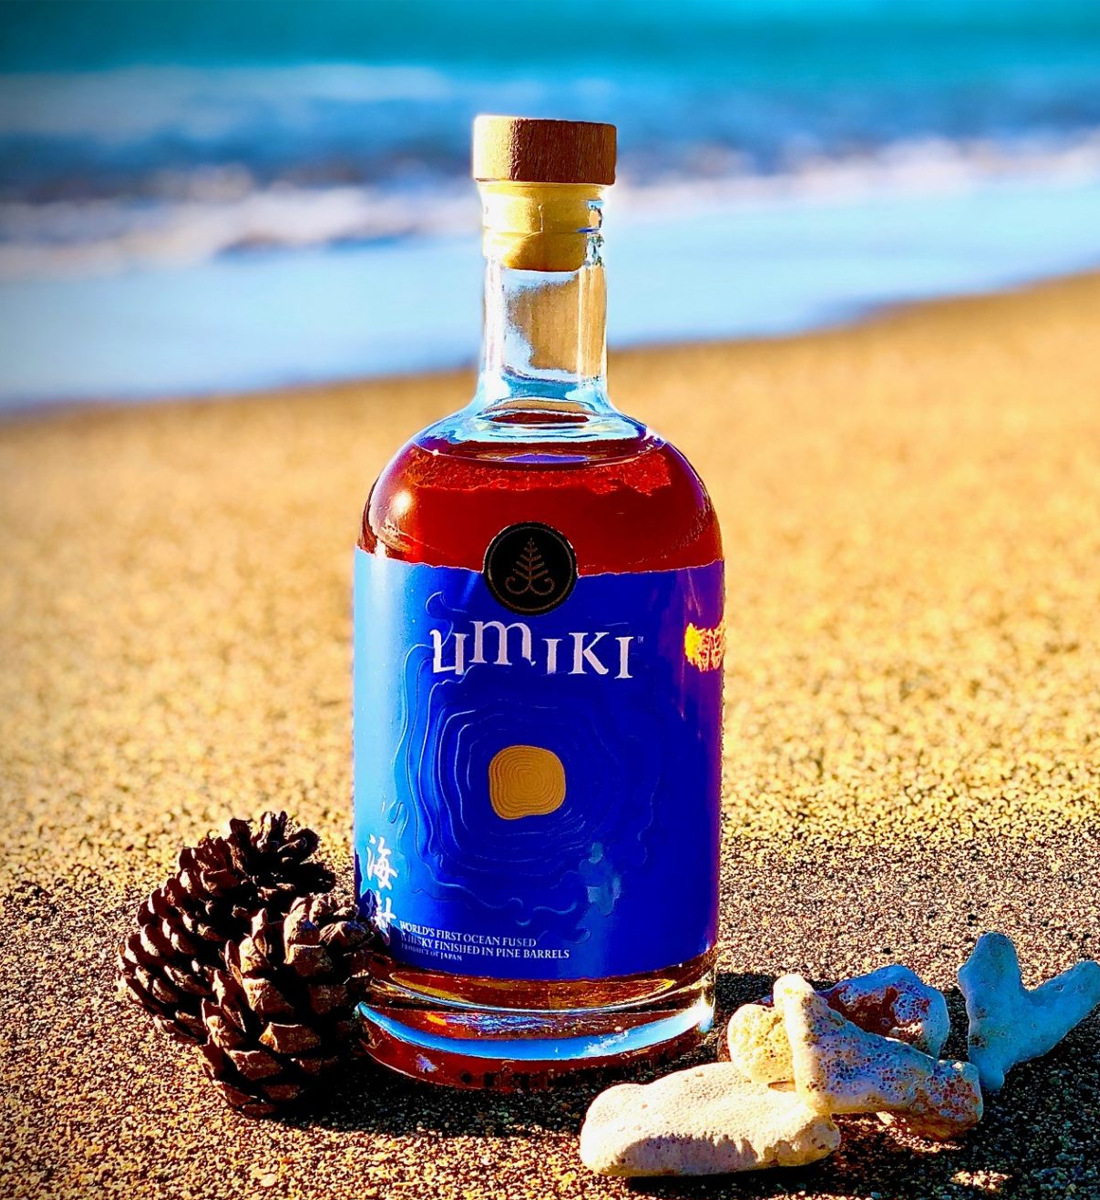 Umiki Ocean Fused Blended Whisky 0.5L